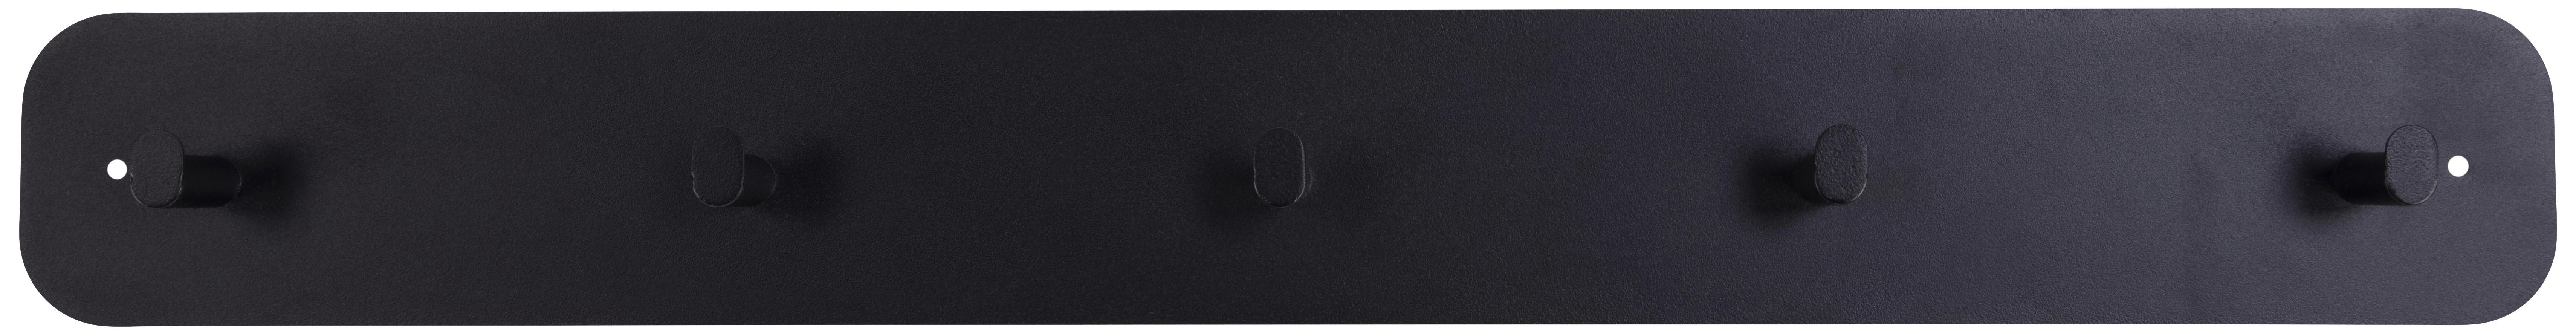 Nástěnný Věšák Selje Š: 80 Cm - černá, Konvenční, kov (80/10/6cm)